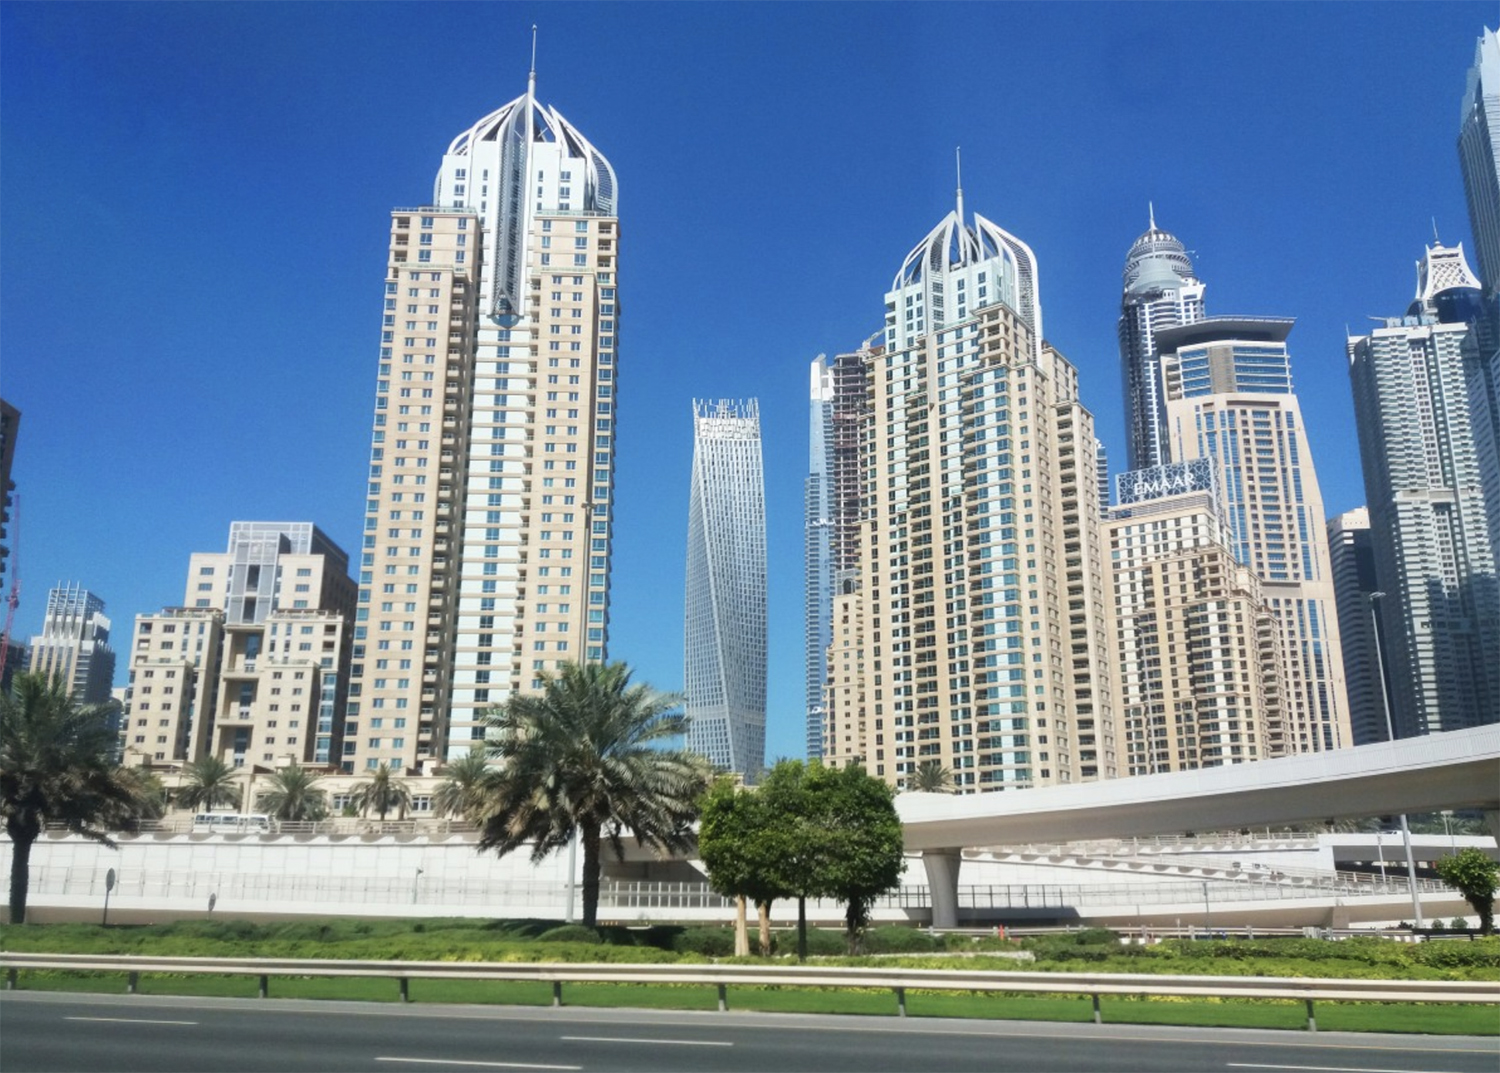 UAE architecture